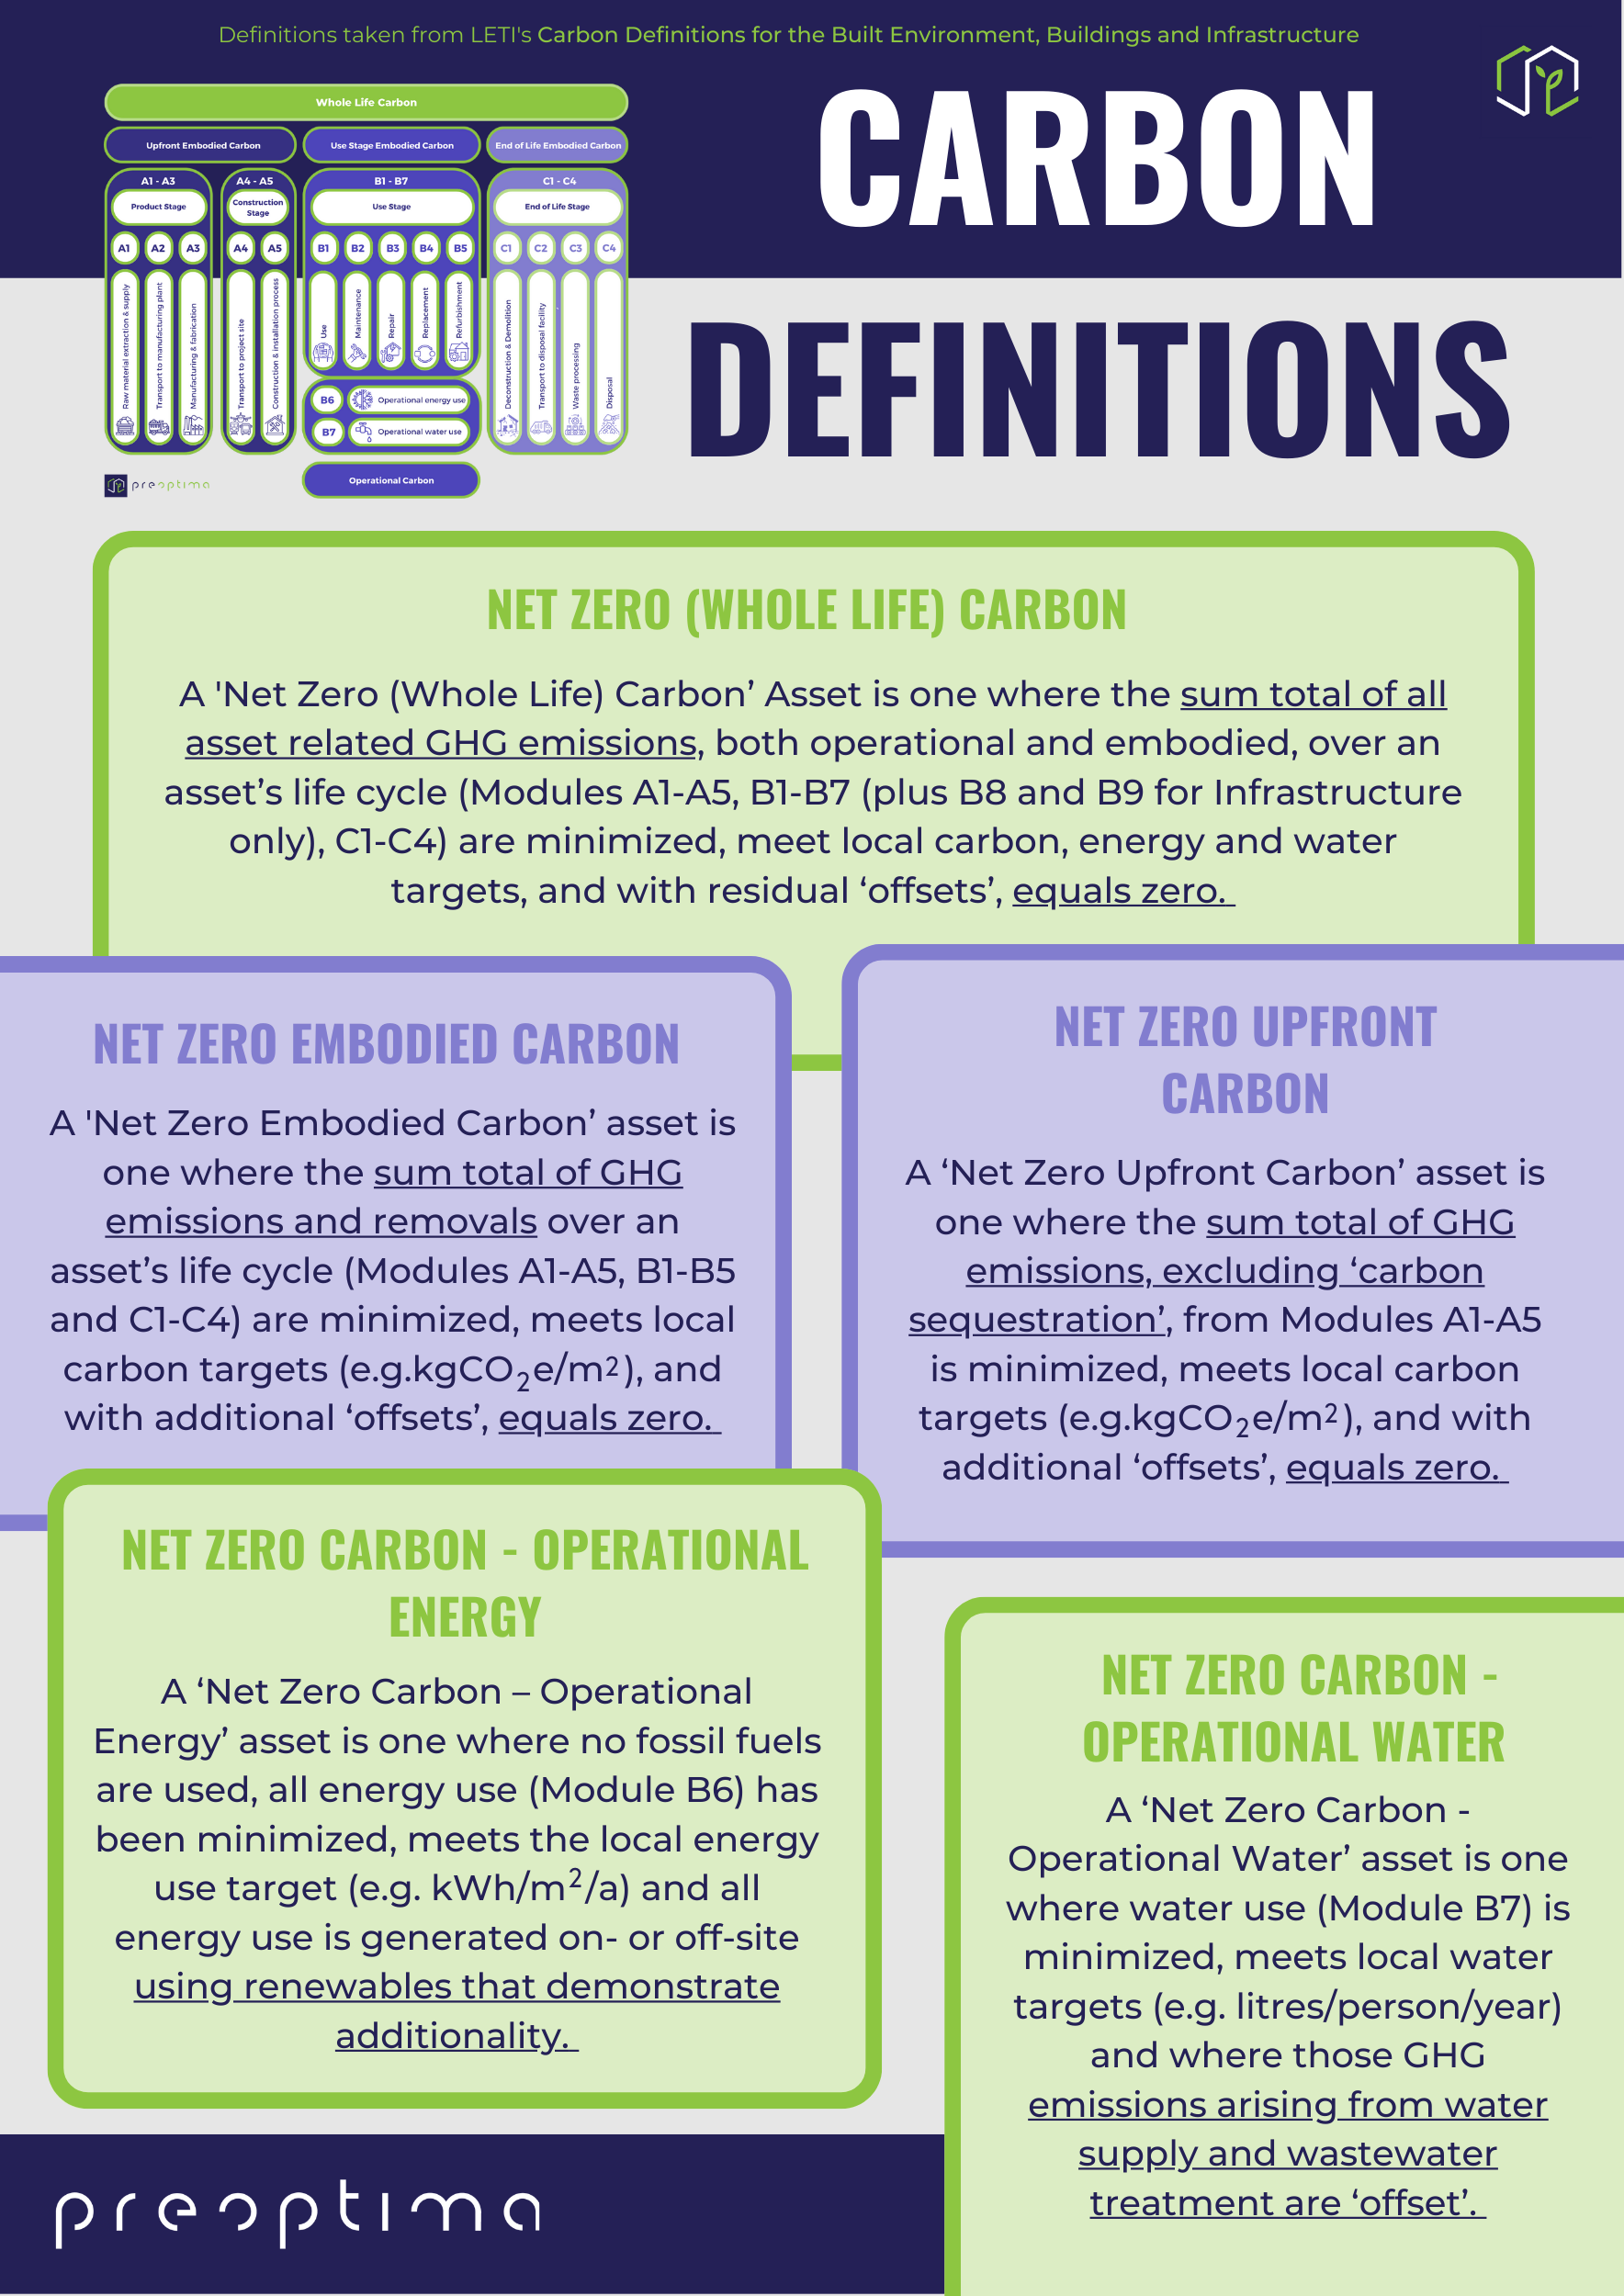 Carbon Definitions 2